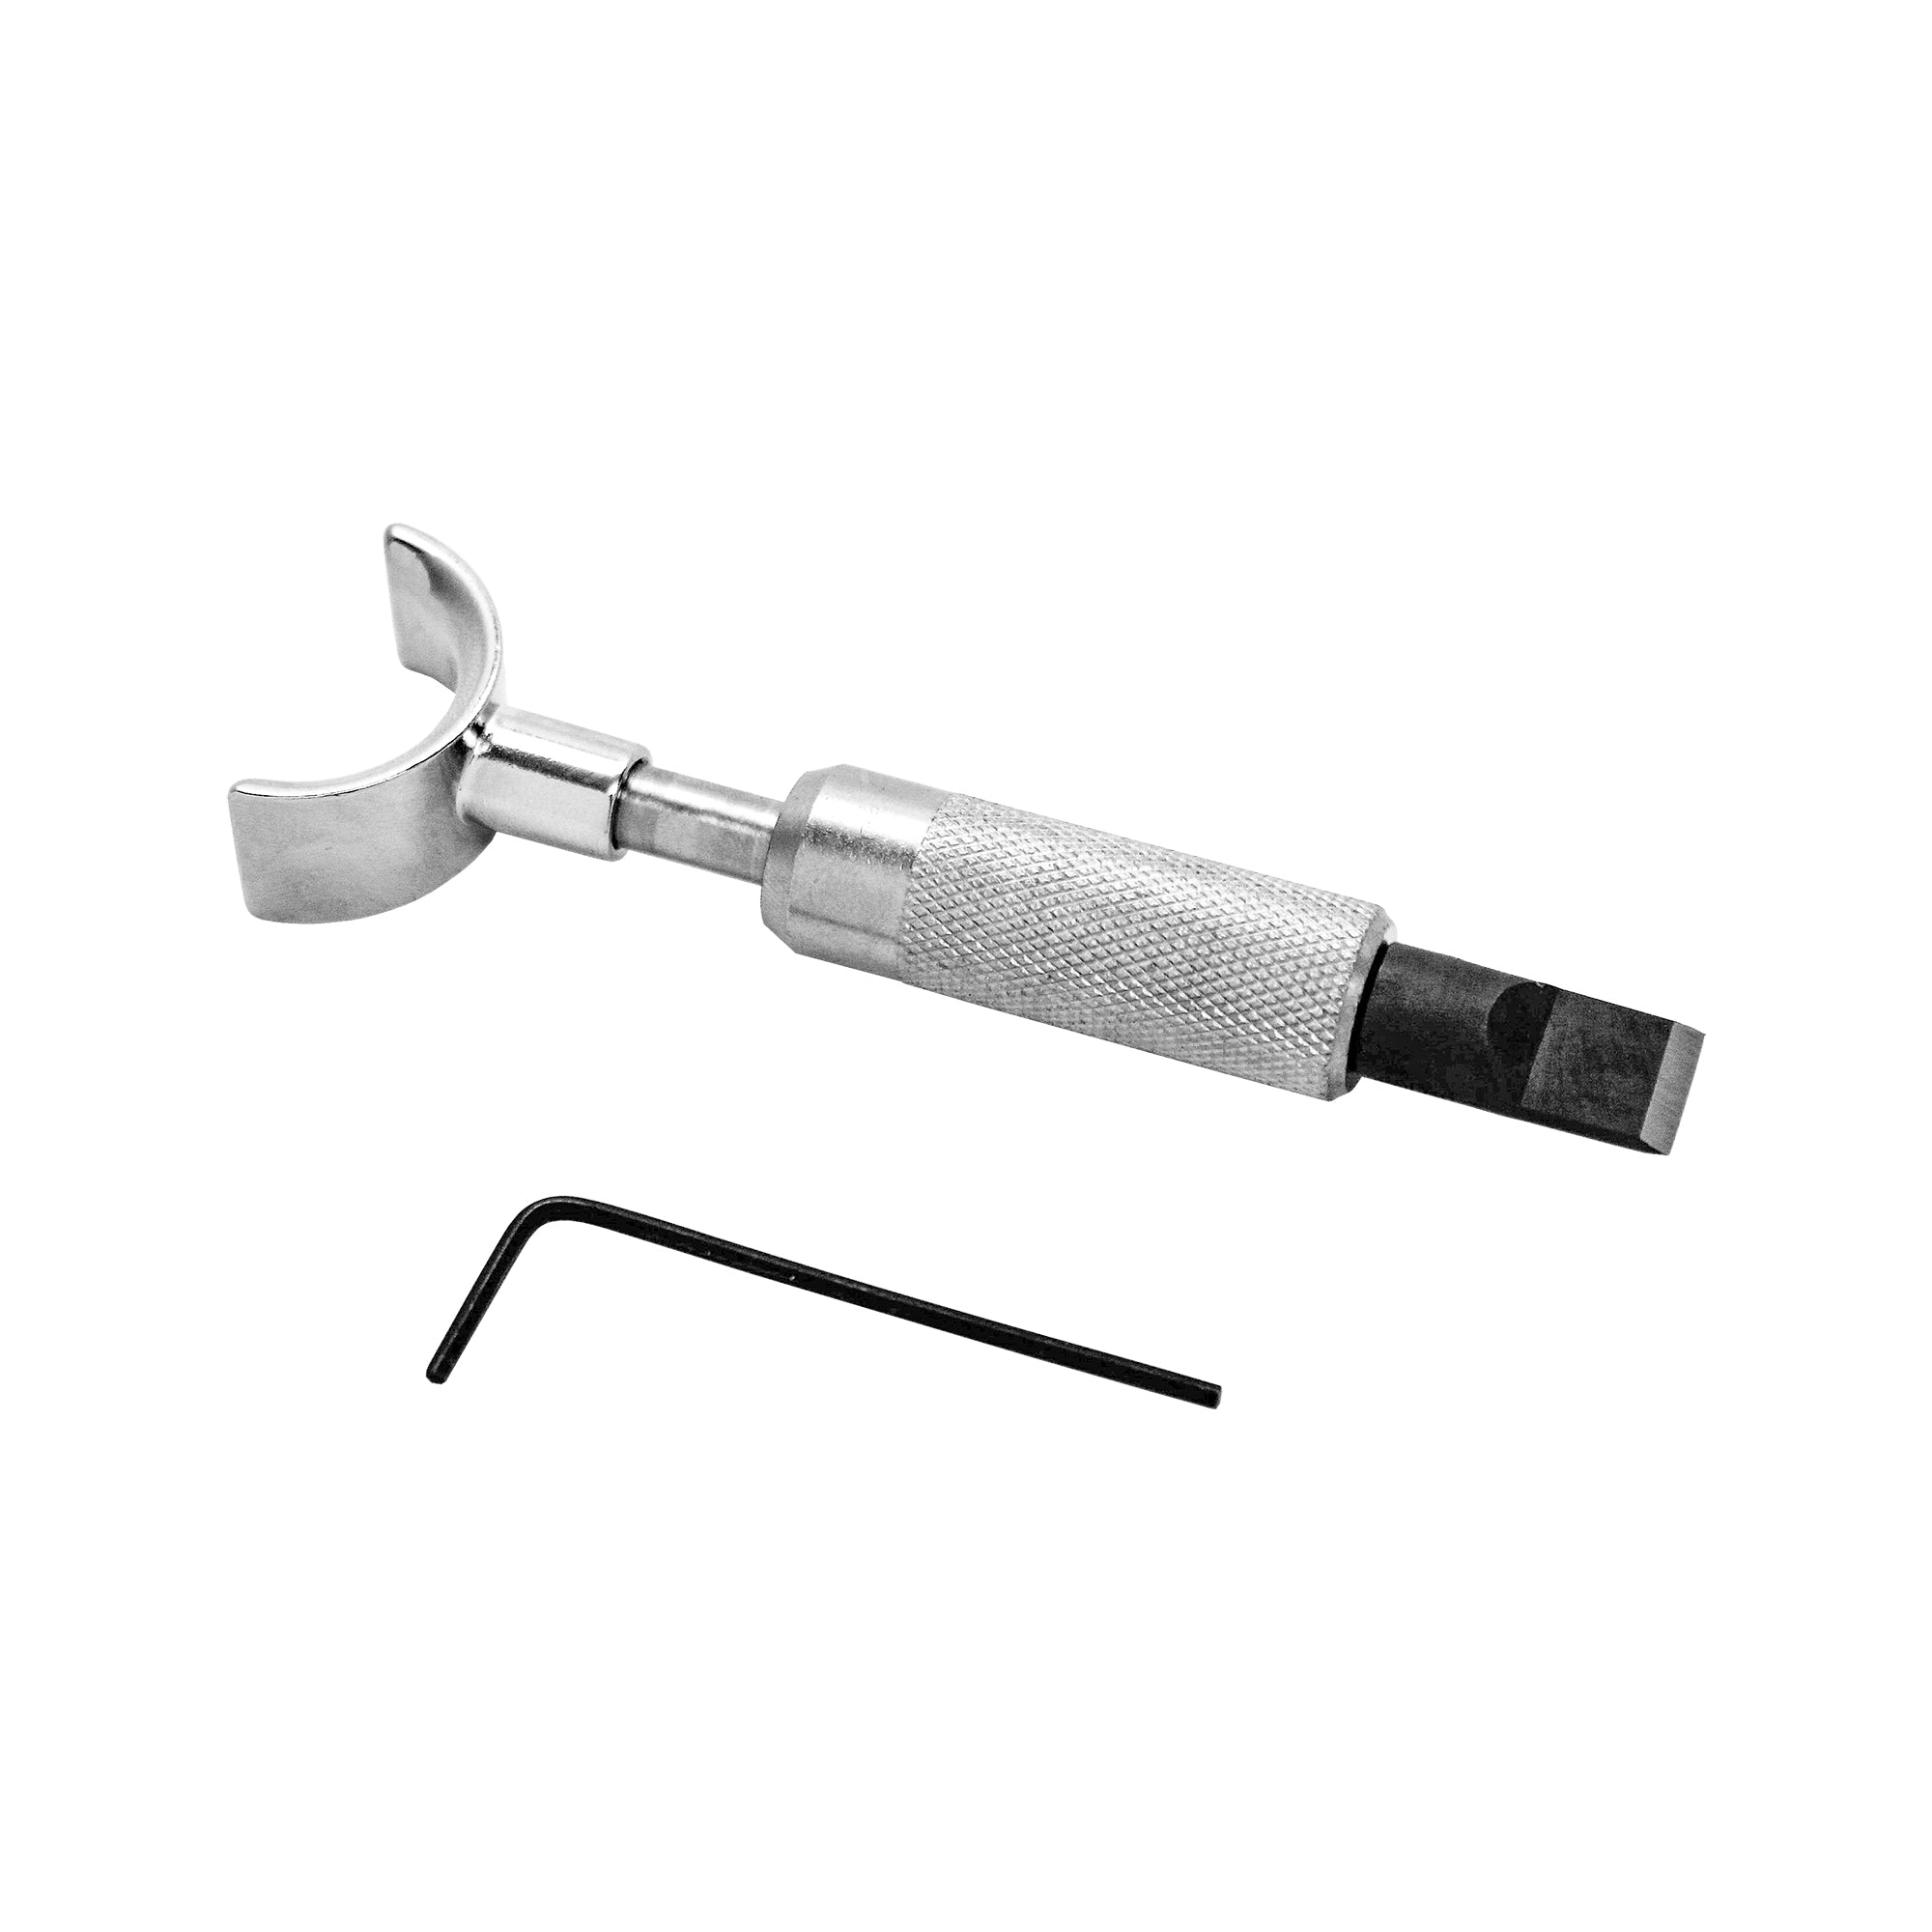 Basic Leathercraft Tooling Set w/ Swivel Knife – Shop Realeather